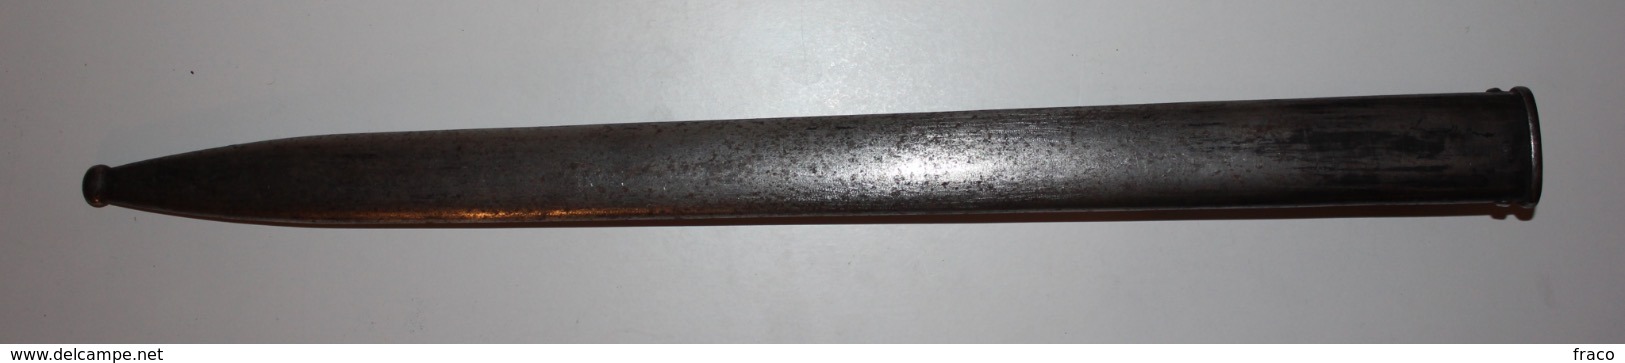 Fourreau Baïonnette Mauser Argentin Mle 1891 - Armes Blanches